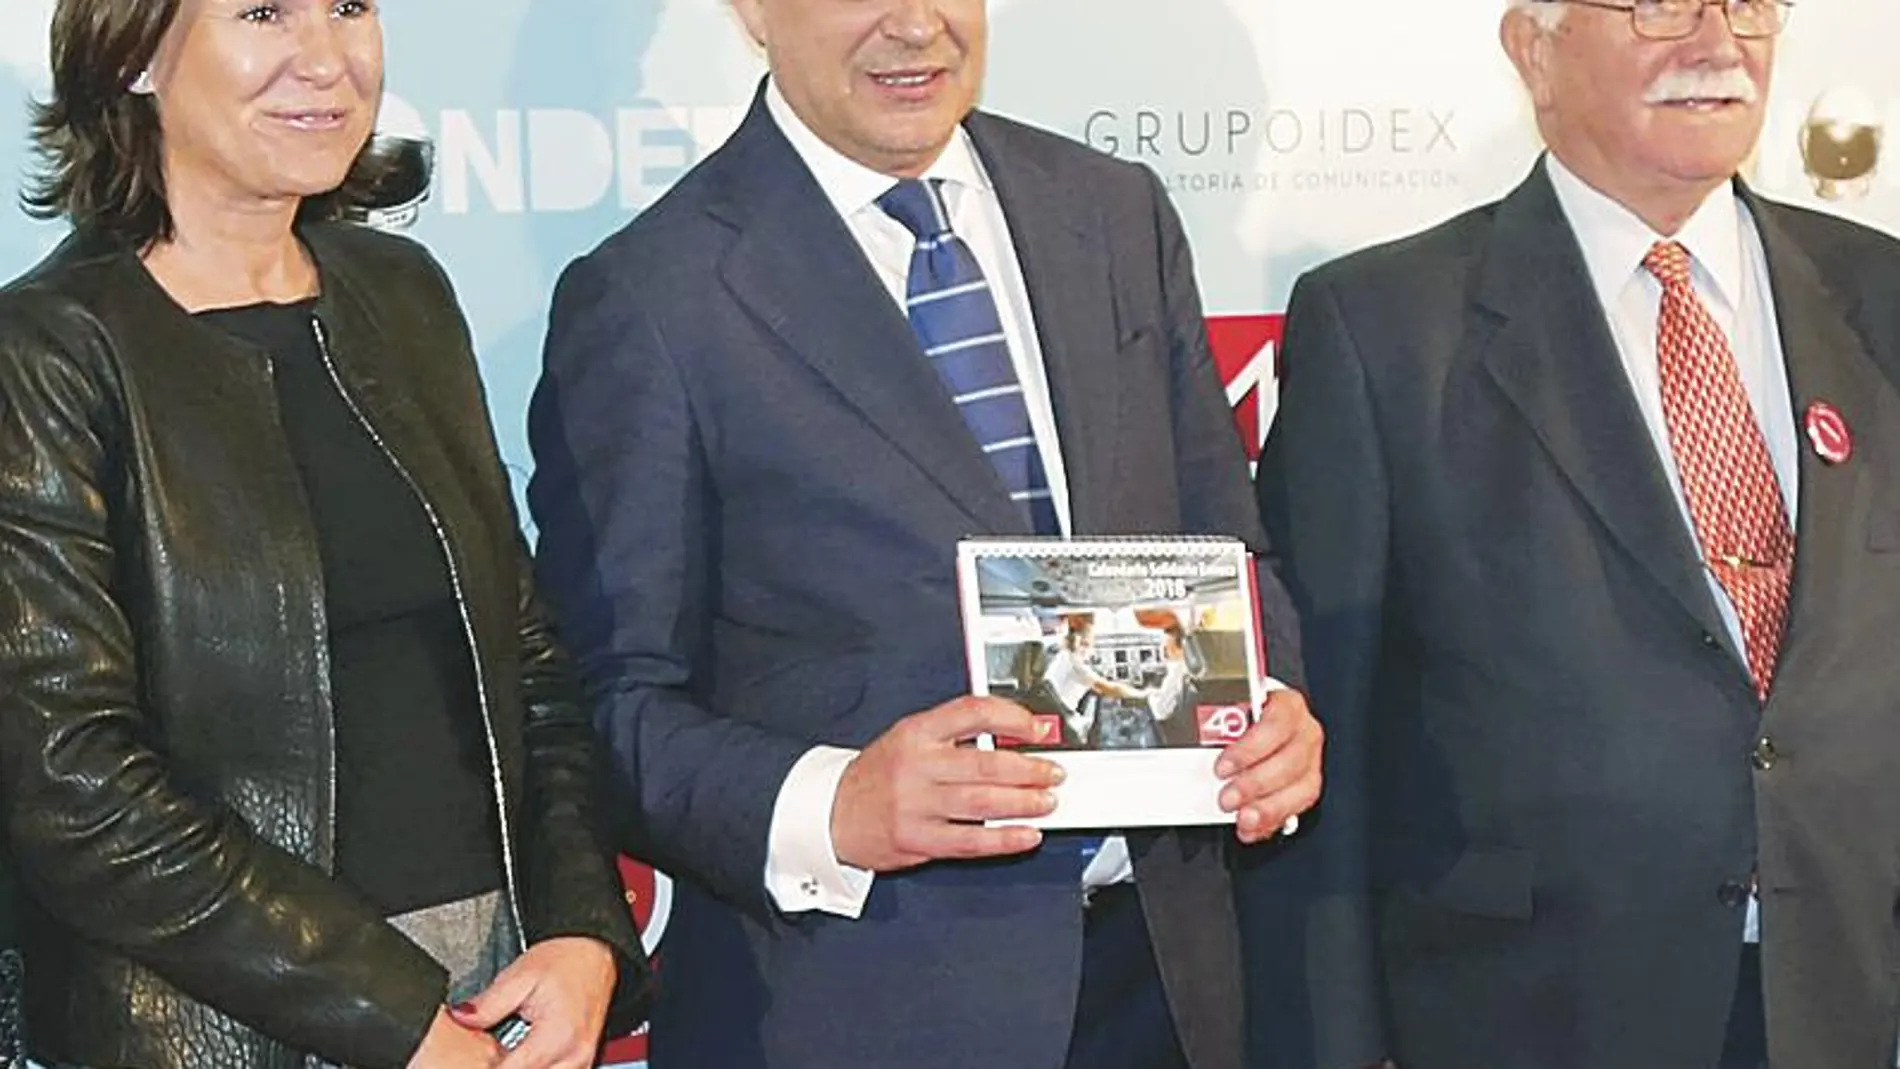 De izq. a dcha.: Cristina Moral de Ferrovial; Hilario Alfaro, presidente de Madrid Foro Empresarial; y José Antonio Quintero, presidente de Envera